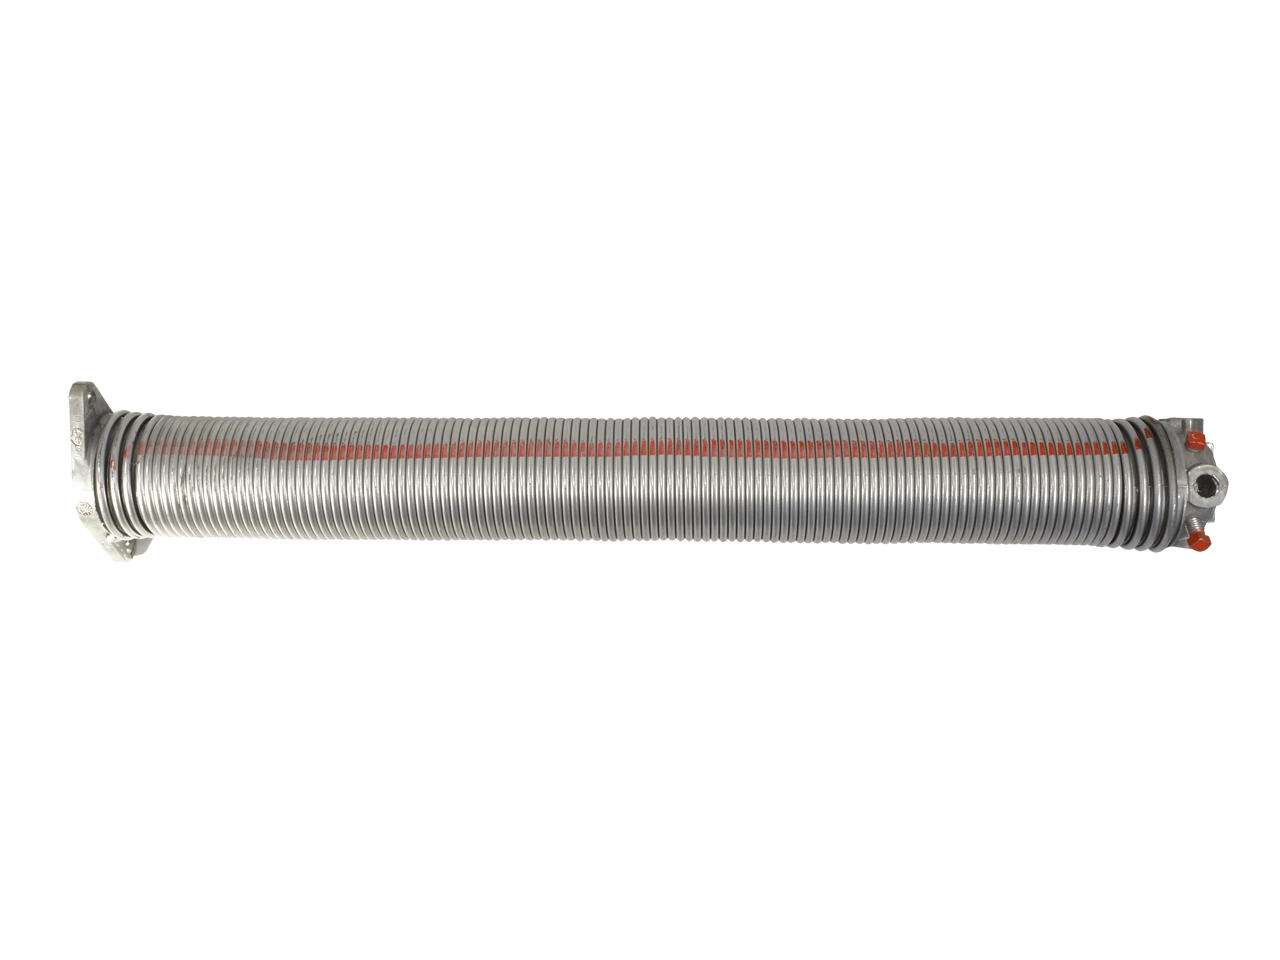 Torfeder, Innendurchmesser 67 mm, Drahtstärke 7 mm, Windung Links, mit Köpfen für Welle 25,4mm